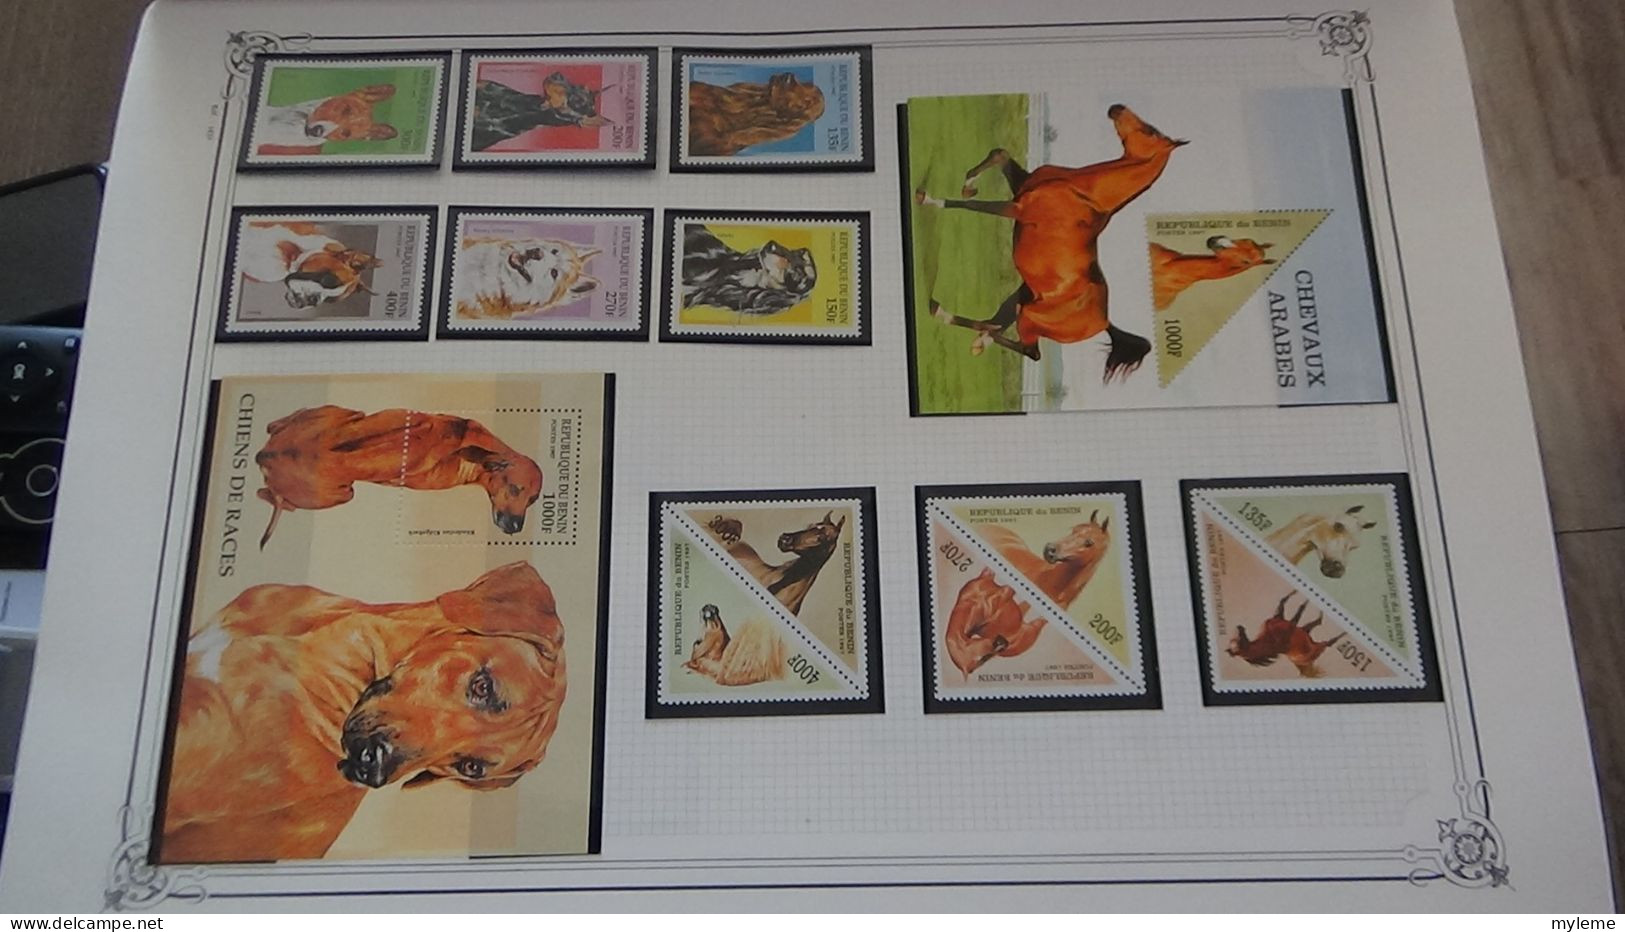 BC102 Collection de timbres et blocs ** du Bénin sur feuille d'album.  A saisir !!!